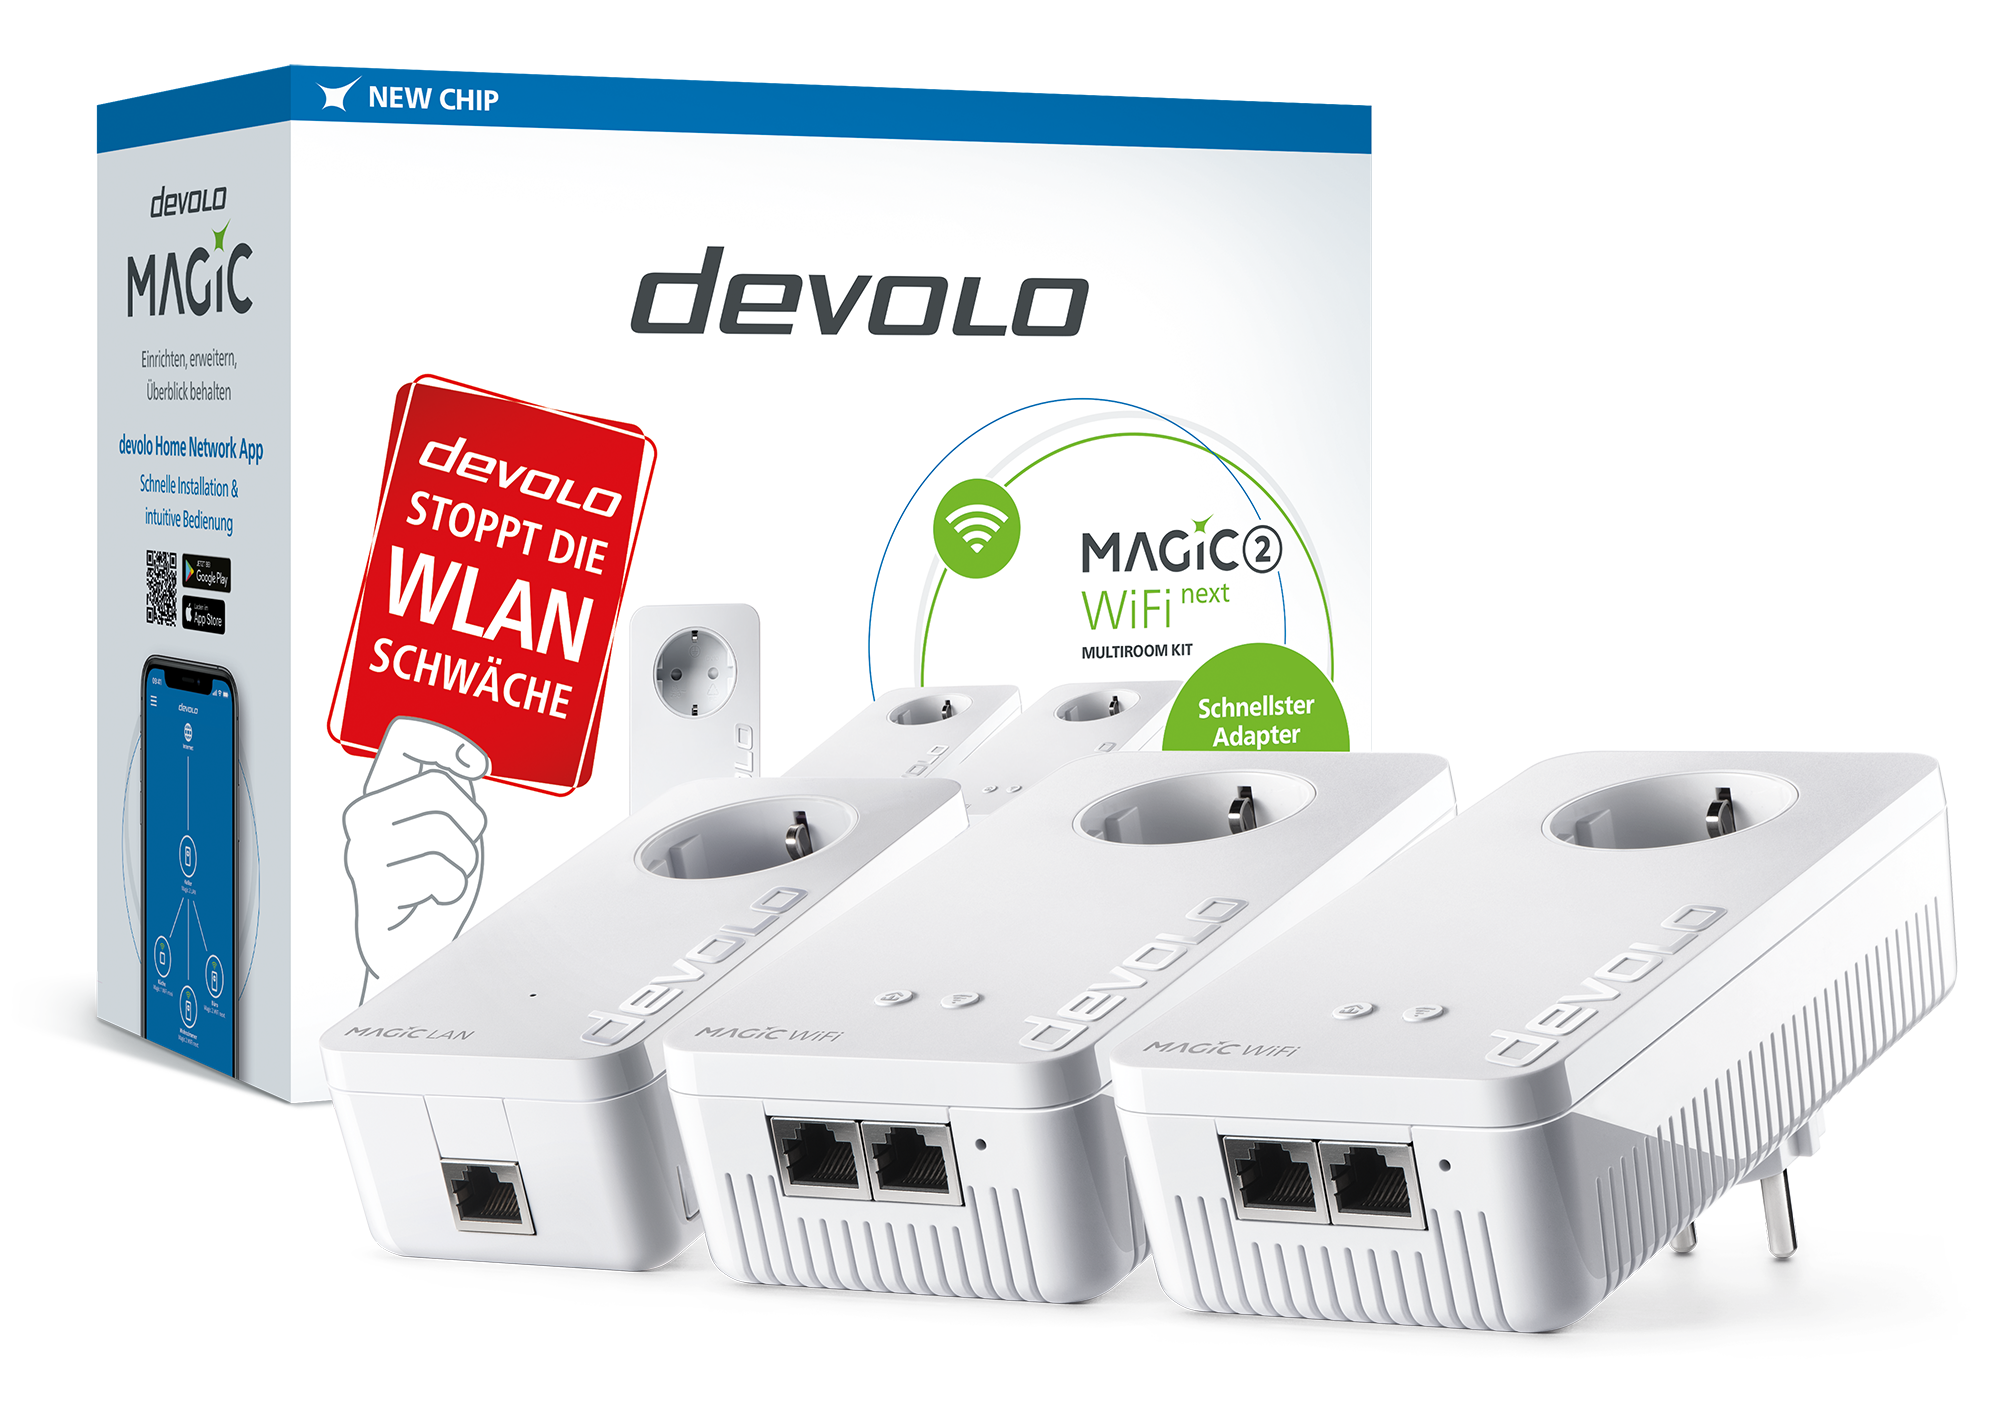 devolo Magic 2 WiFi next Multiroom Kit, Multiroom Kit